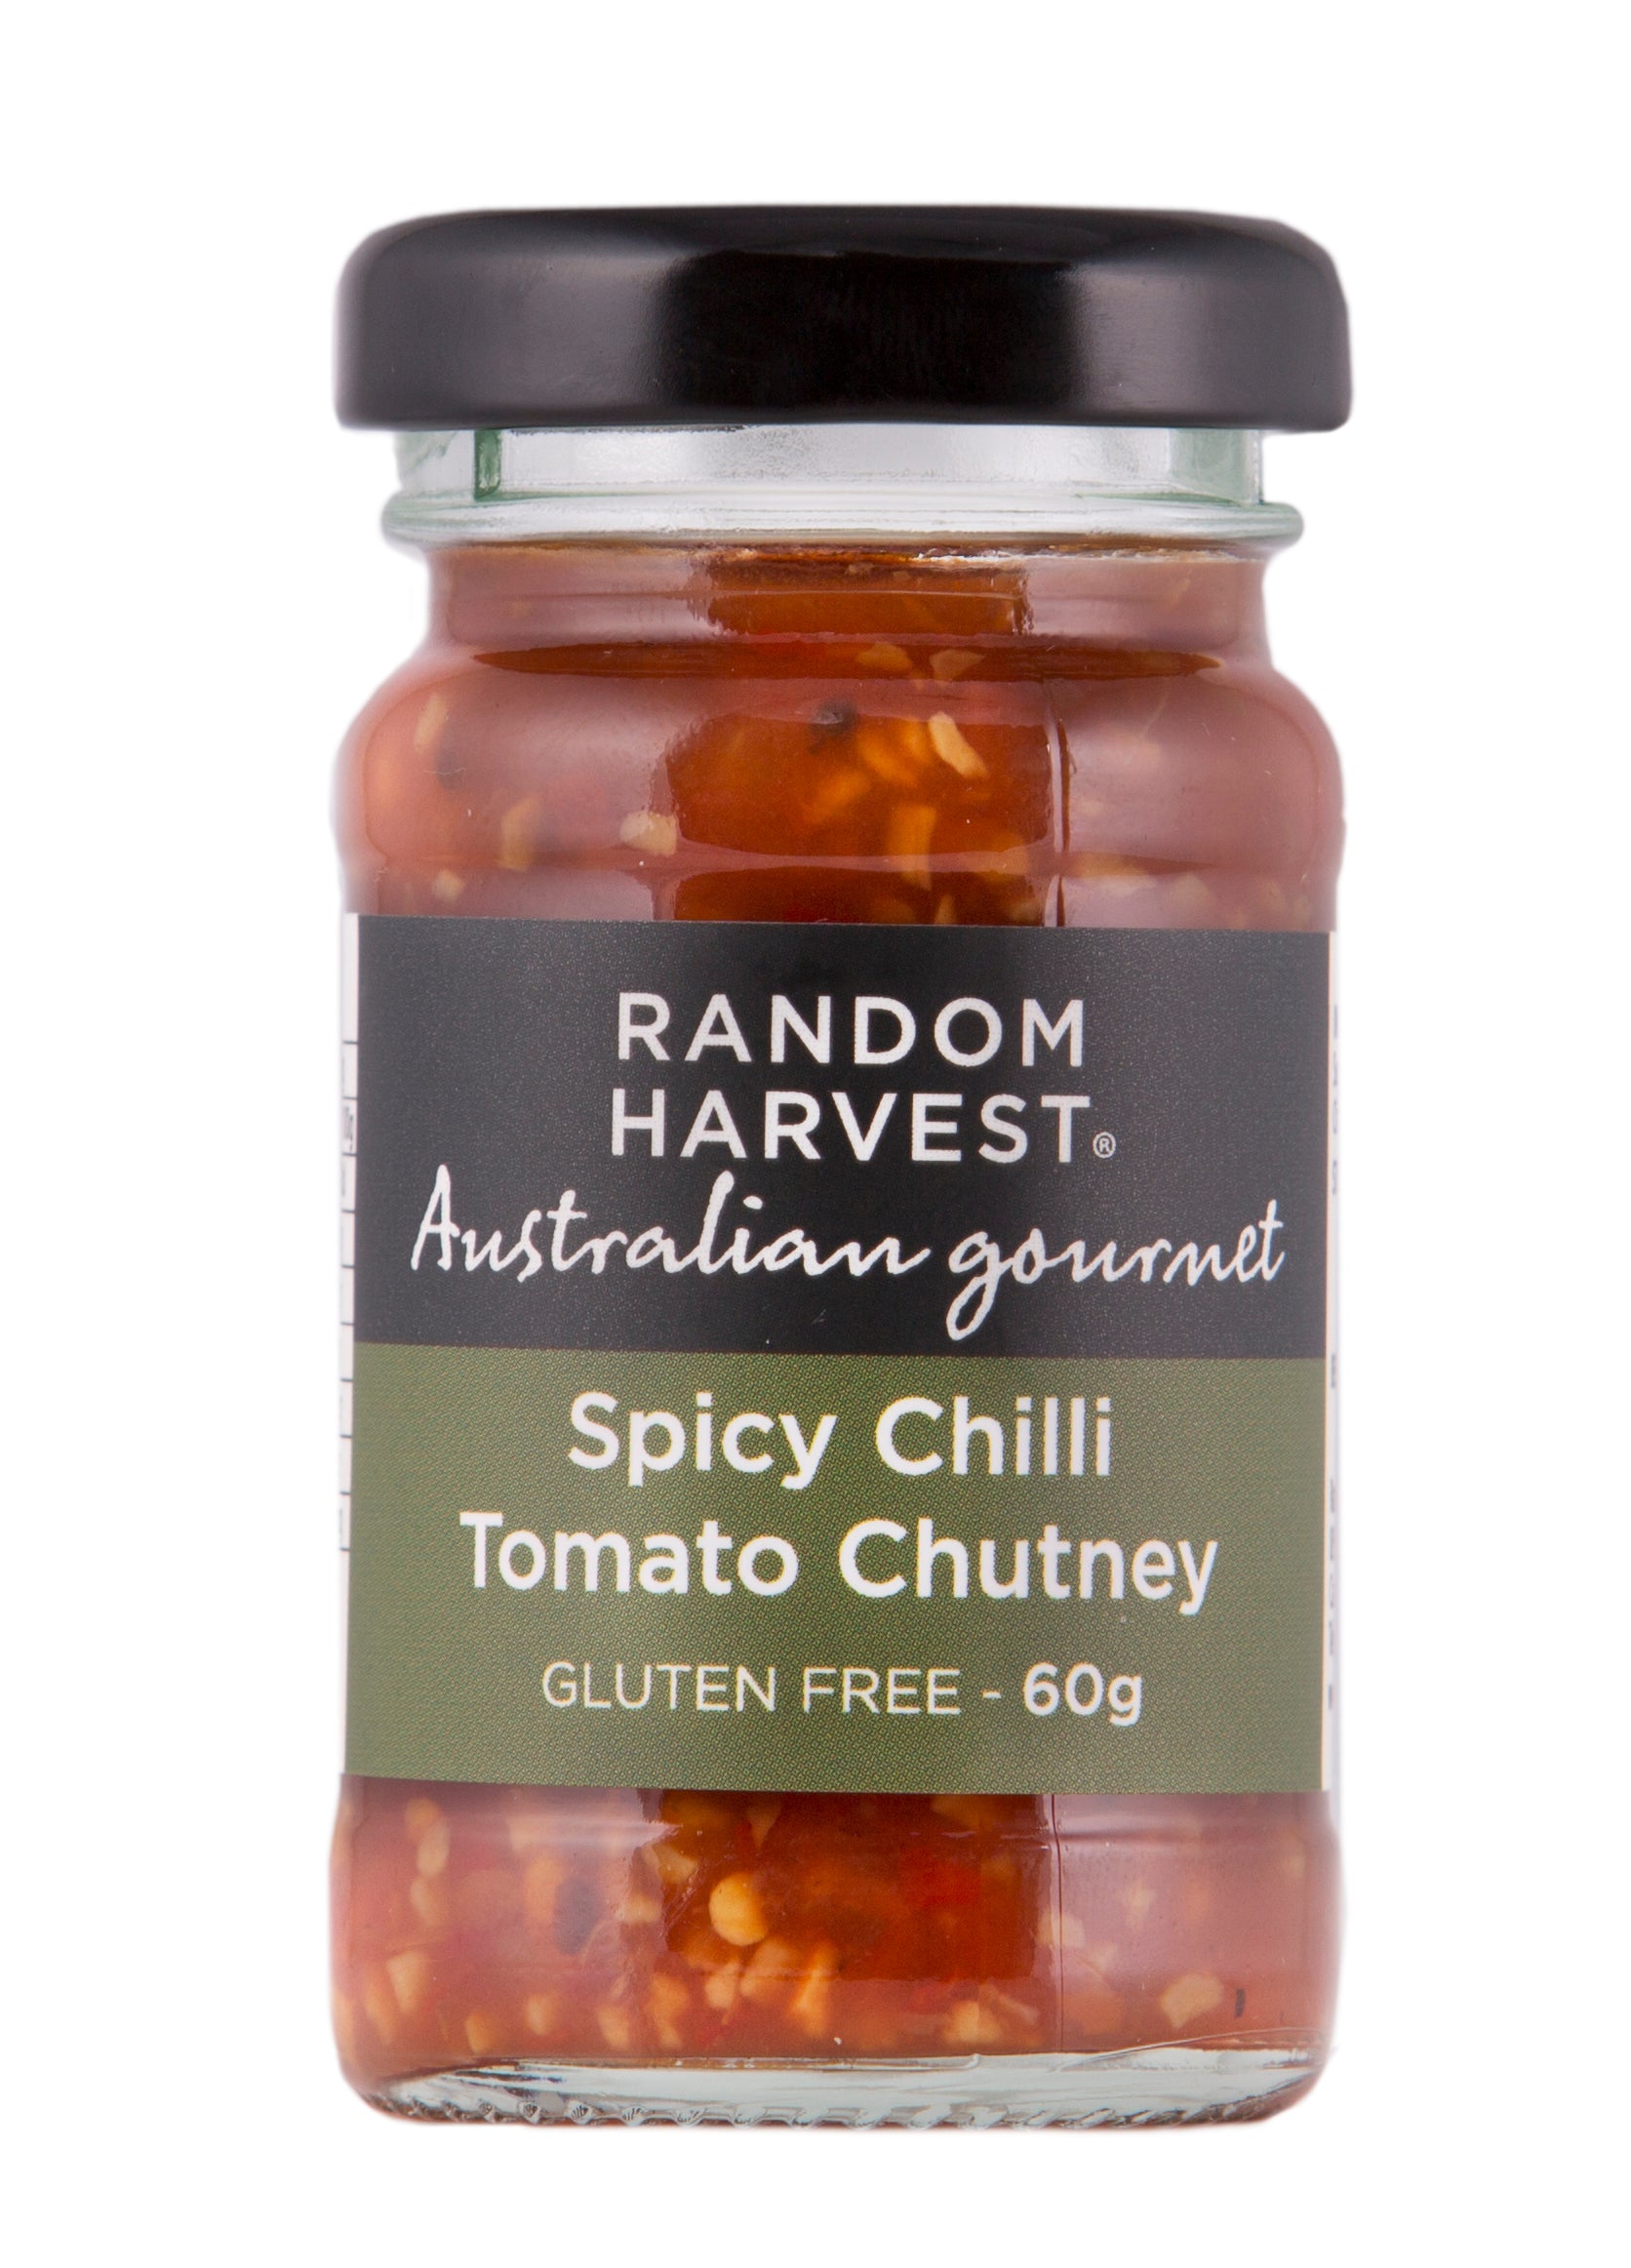 Spicy Chilli Tomato Chutney